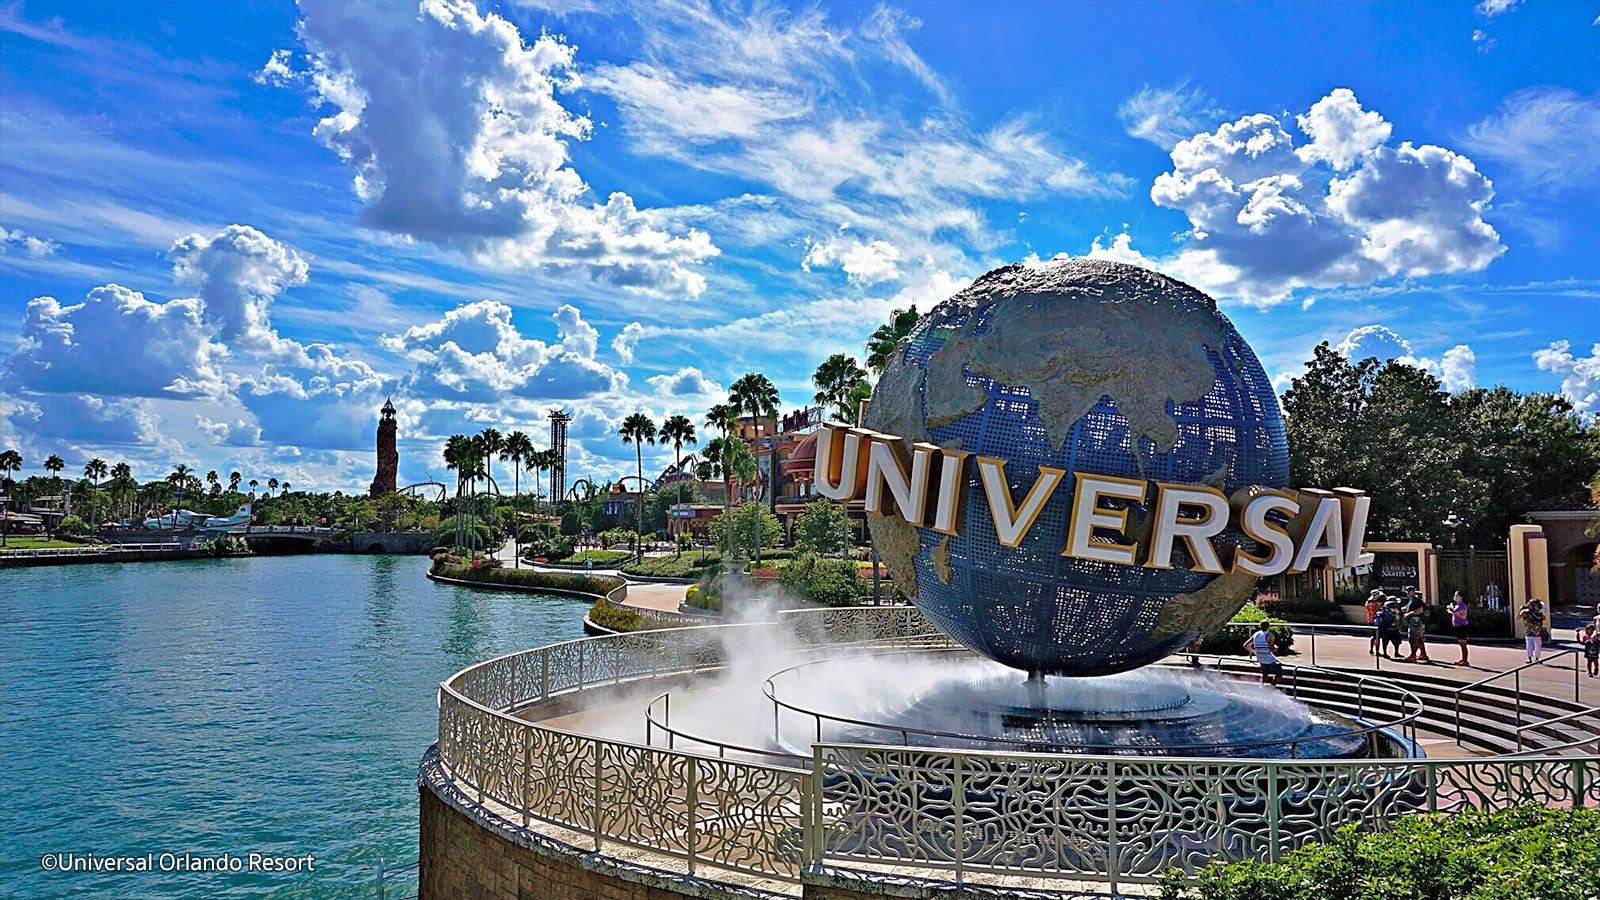 Rumores sobre nuevo proyecto de Universal Orlando toman fuerza